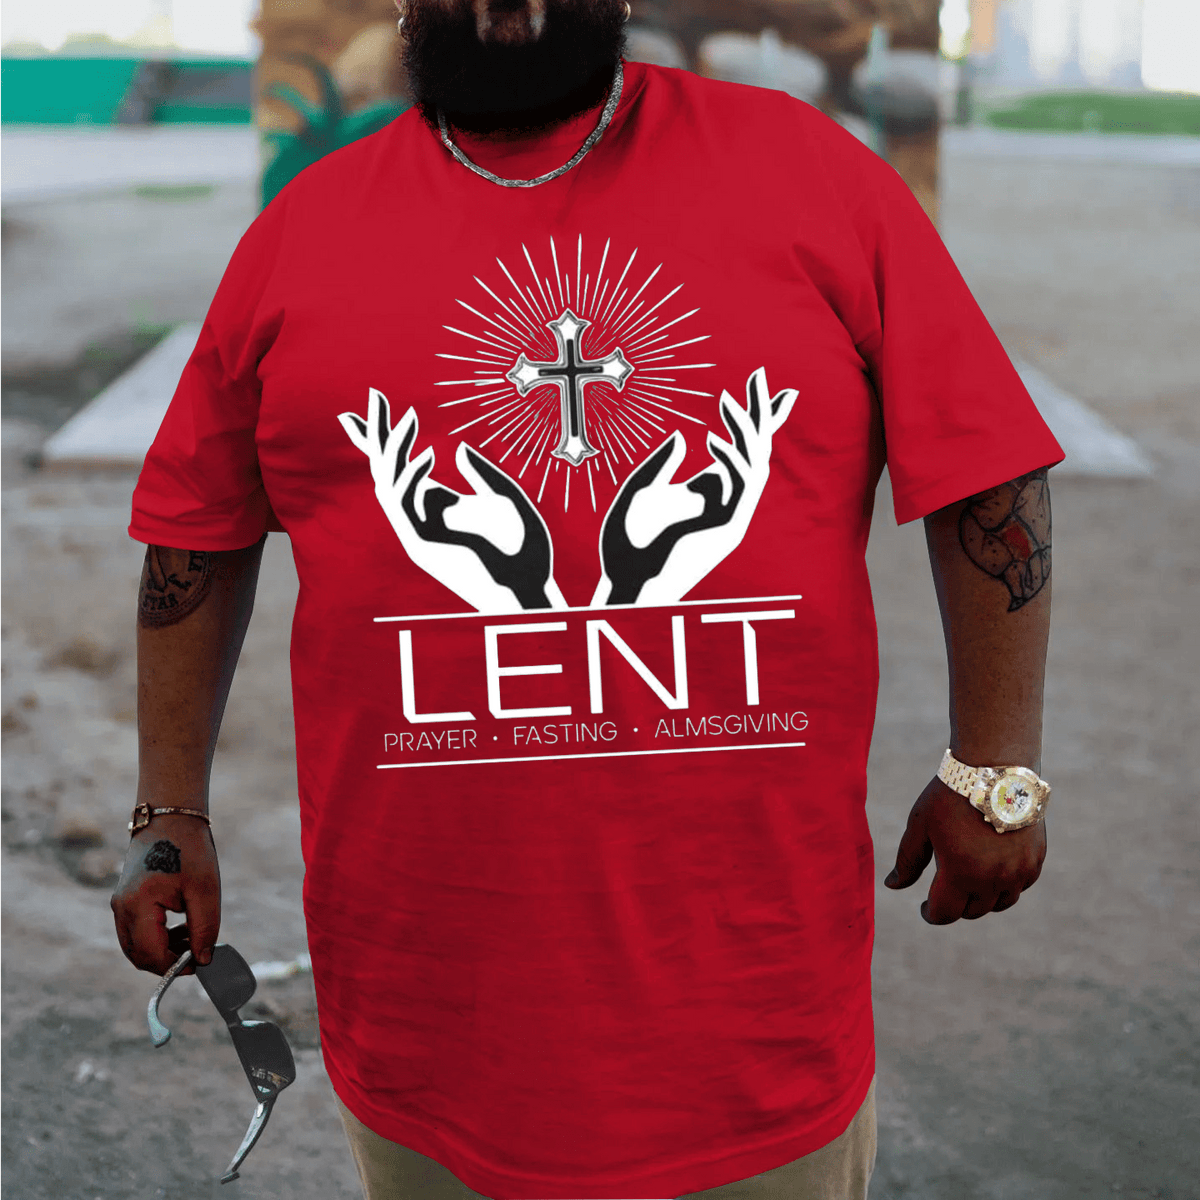 Lent Prayer Fasting Almsgiving Plus Size T-shirt